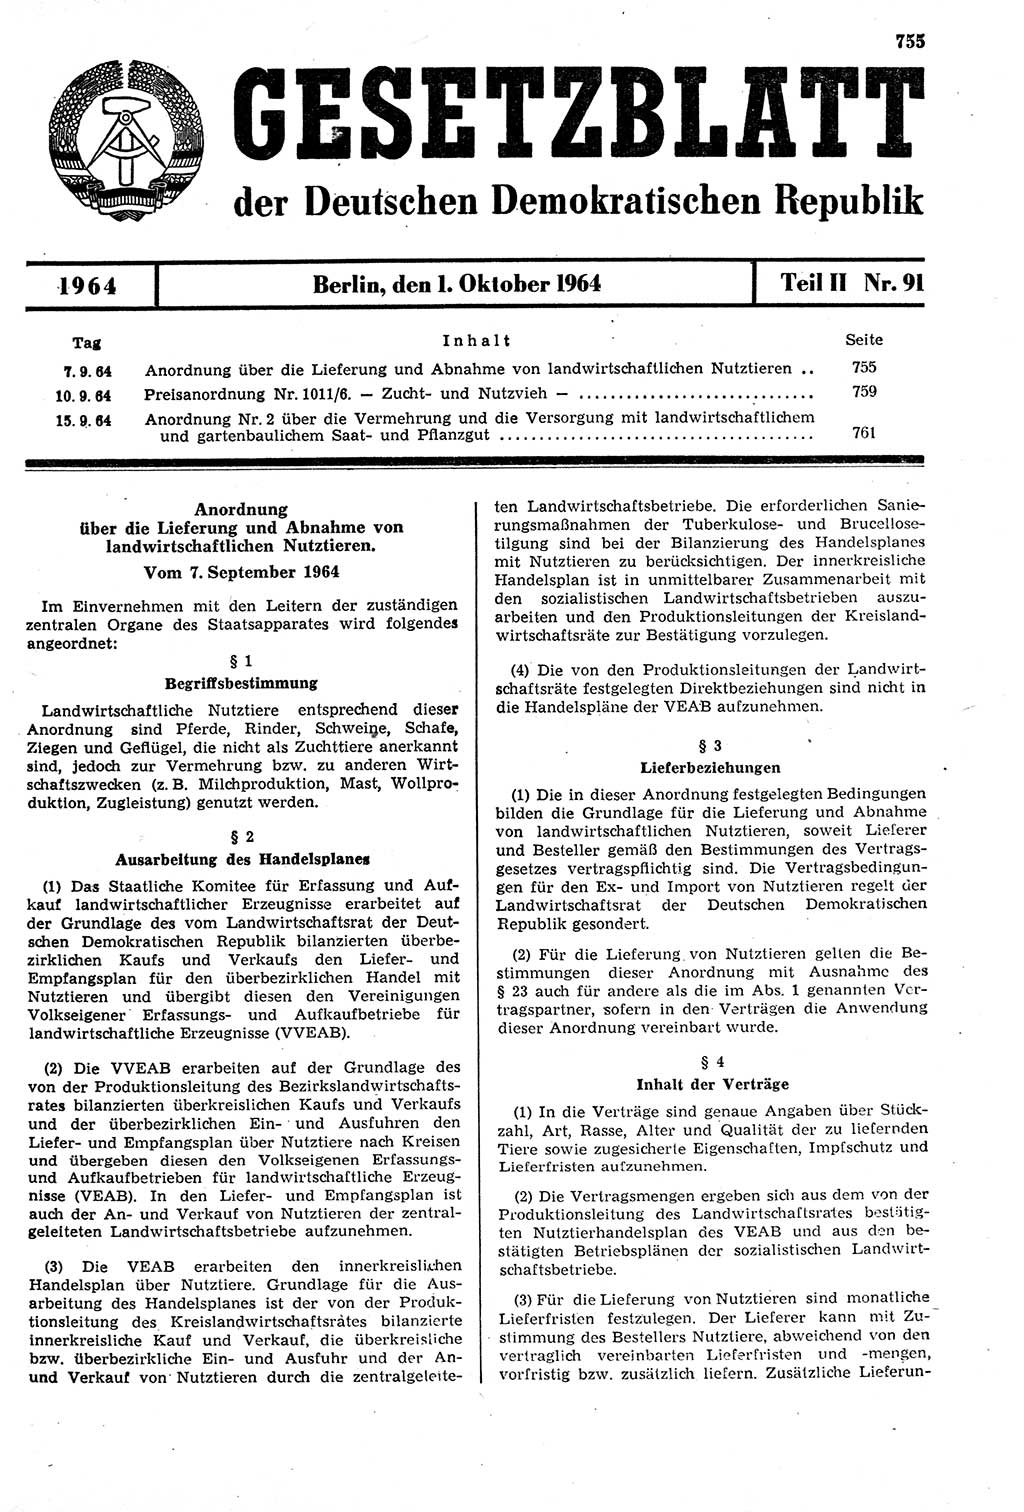 Gesetzblatt (GBl.) der Deutschen Demokratischen Republik (DDR) Teil ⅠⅠ 1964, Seite 755 (GBl. DDR ⅠⅠ 1964, S. 755)